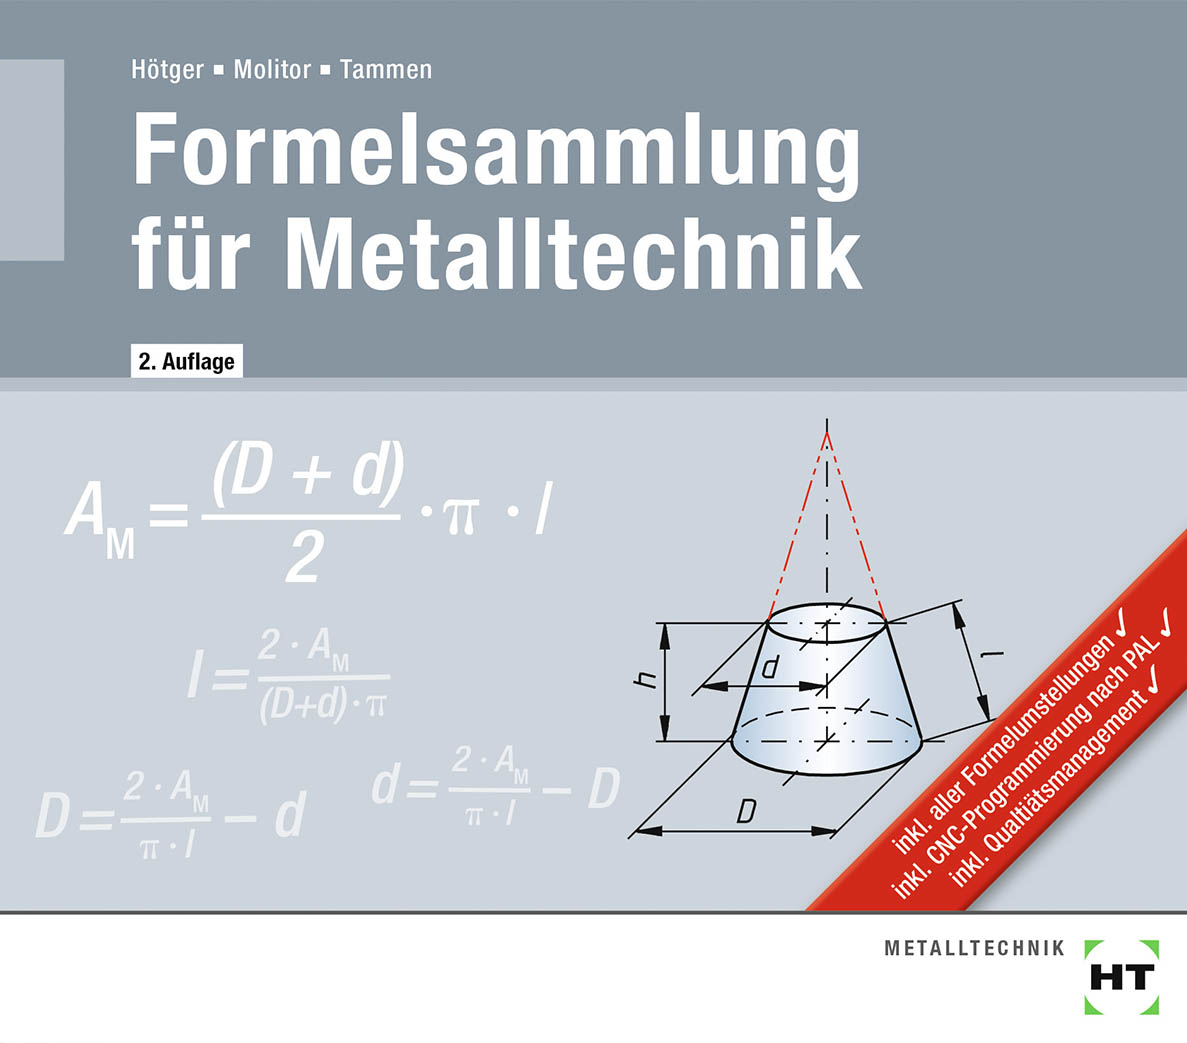 Formelsammlung für Metalltechnik - Tabellen..